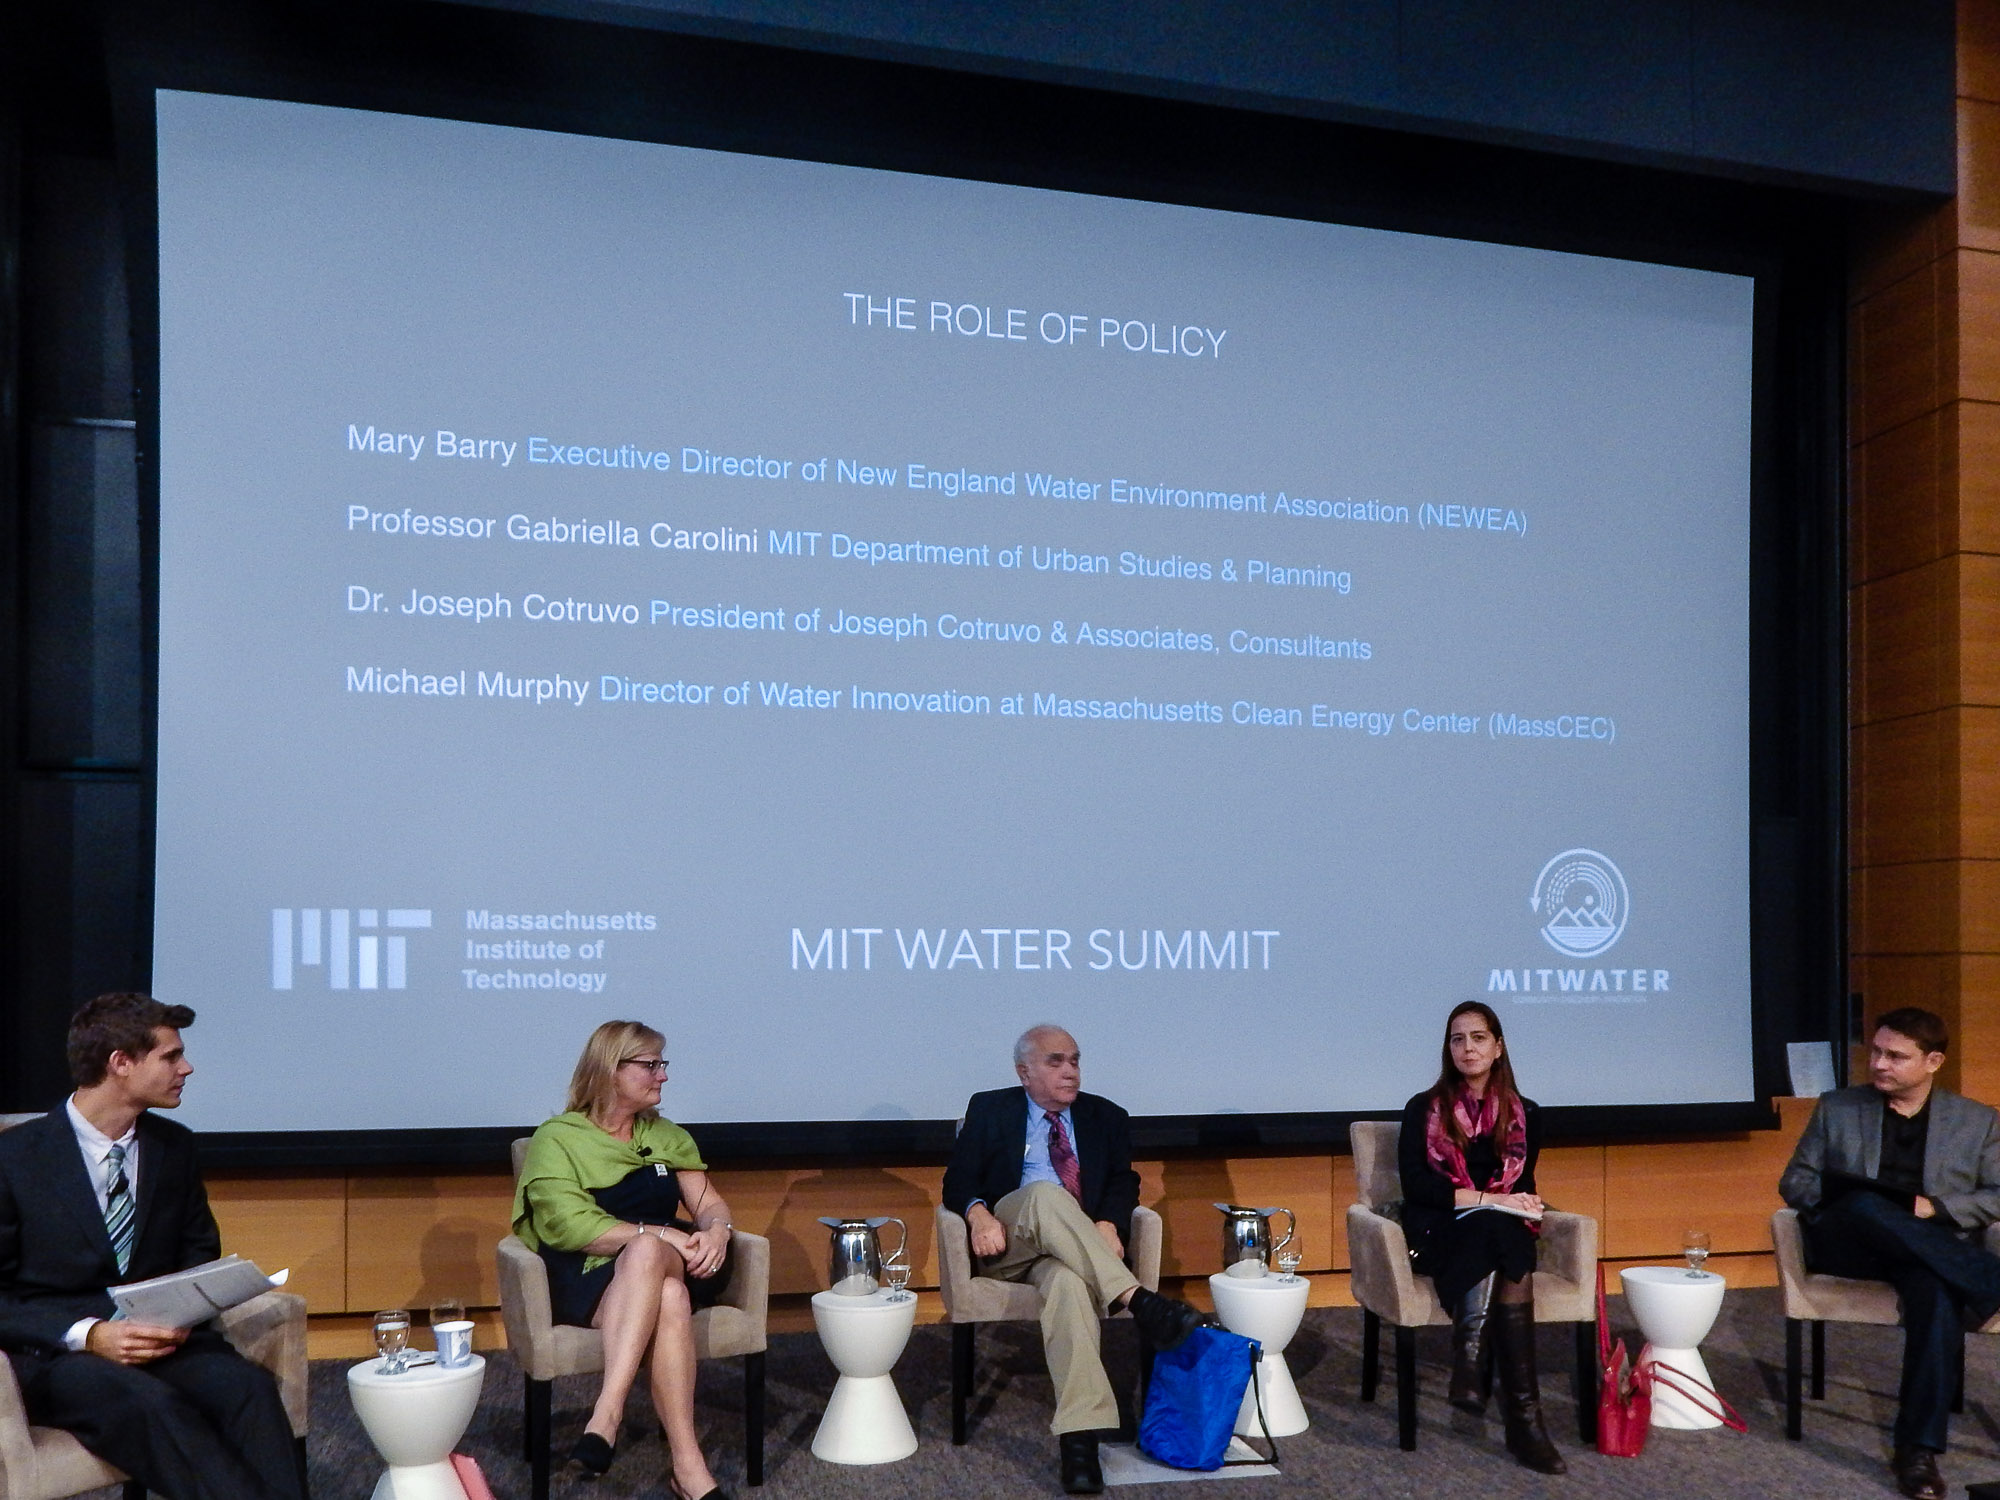  MIT Water Summit, 2016 